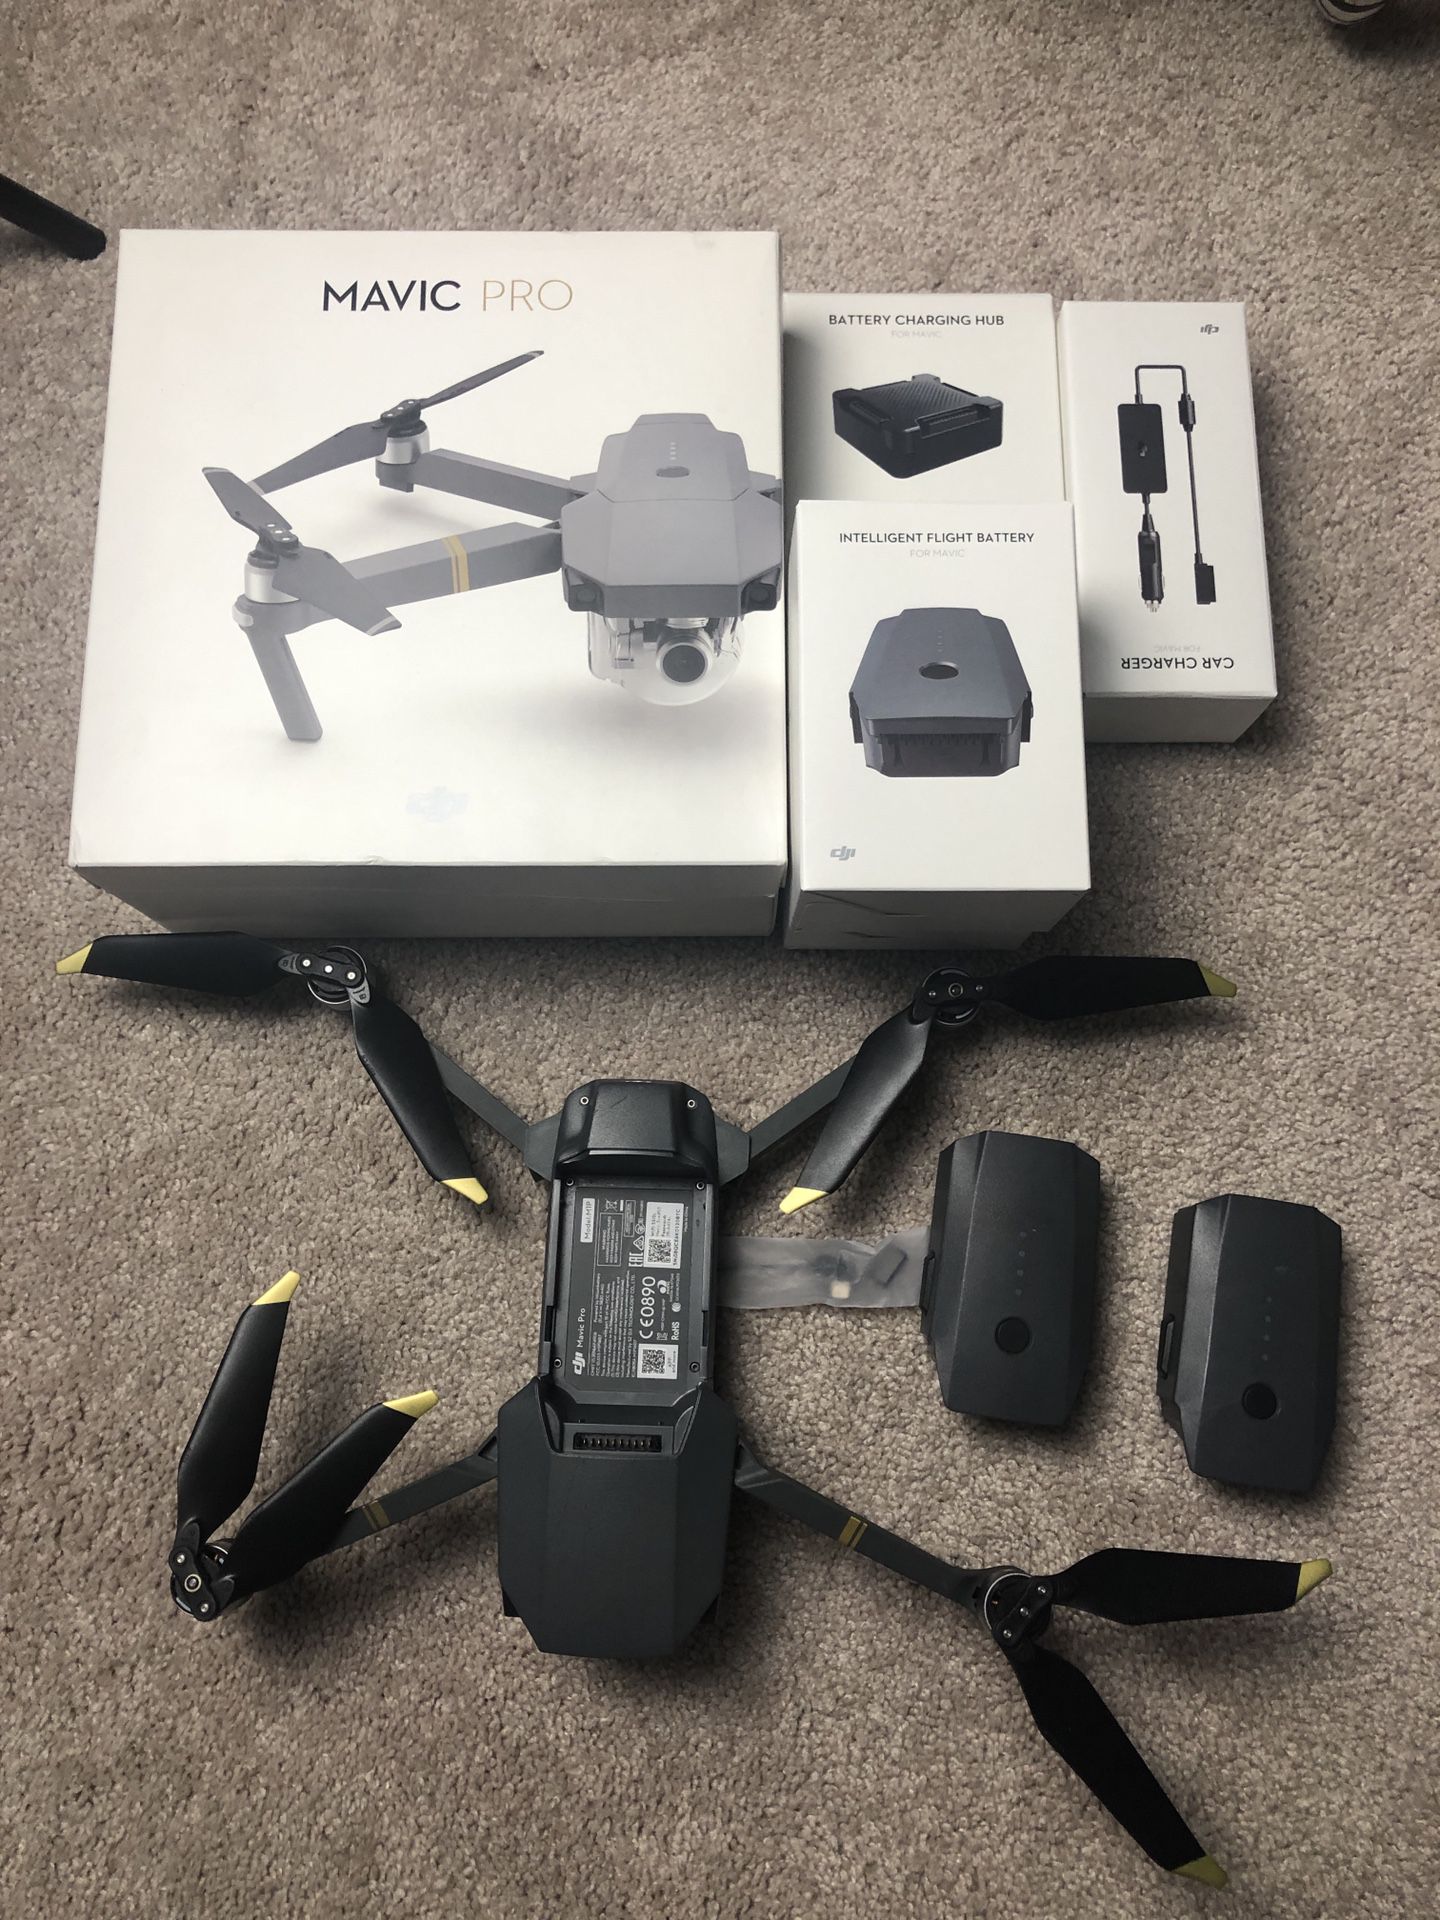 DJI Mavic Pro foldable drone